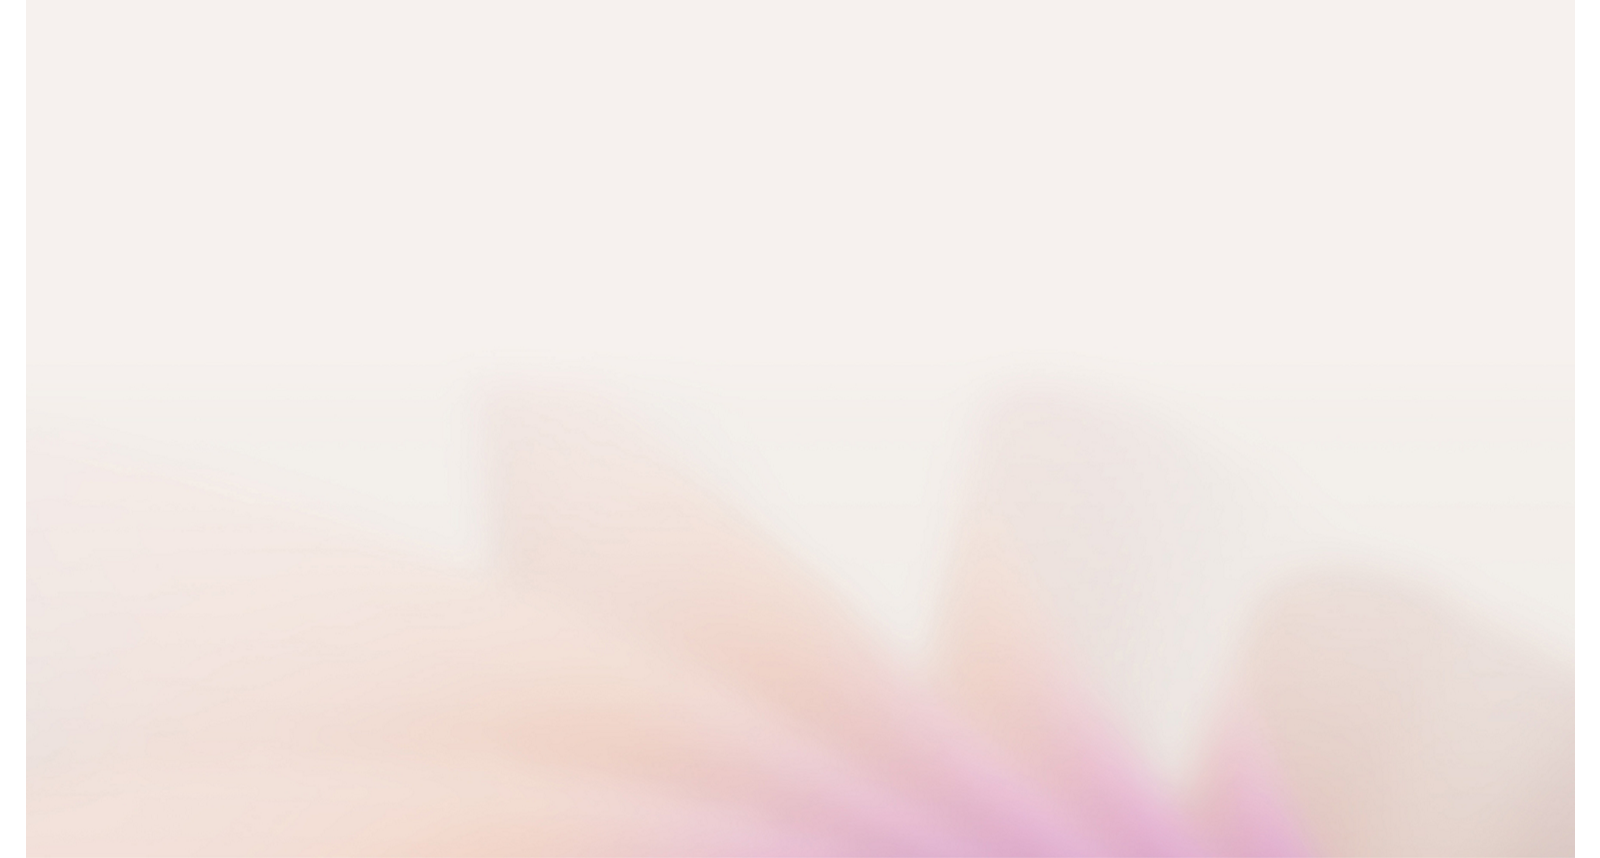 Imagen de foco suave de colores pastel, que sugiere formas florales de color pastel borrosas en tonos rosas y blancos.